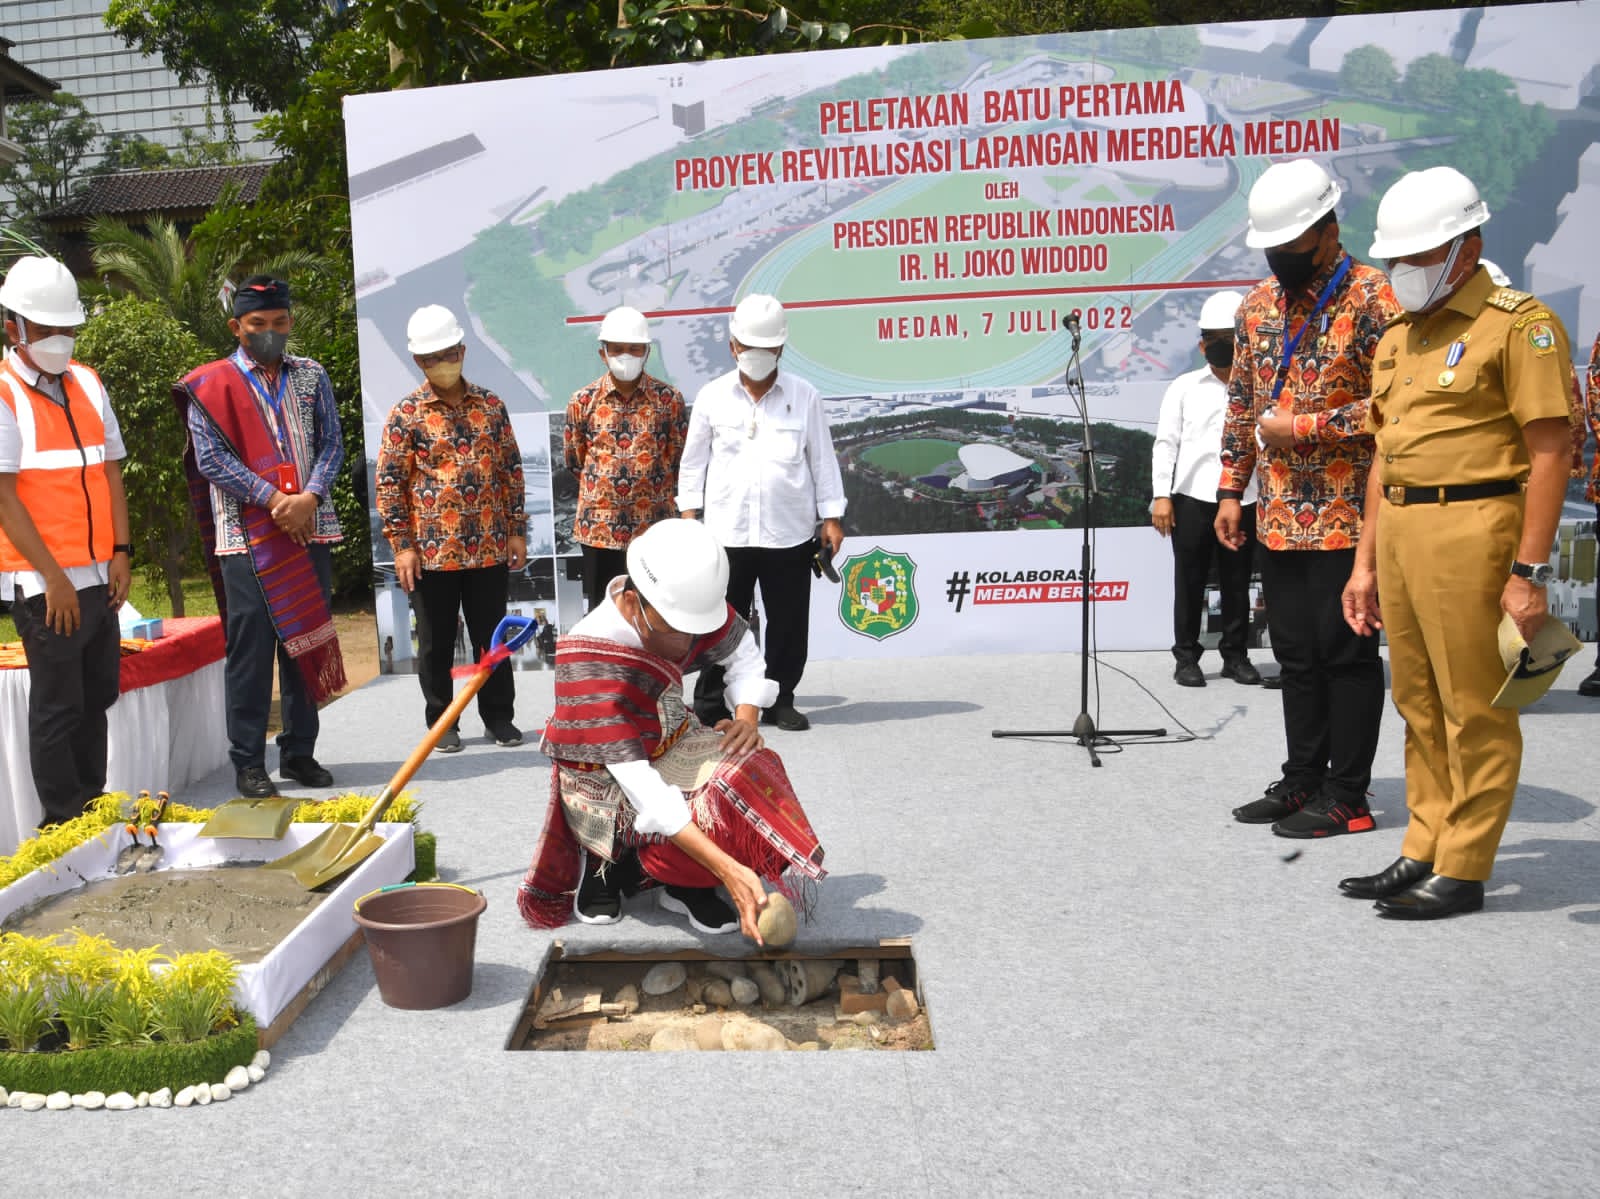 Presiden Jokowi Letakkan Batu Pertama, Revitalisasi Lapangan Merdeka Dimulai